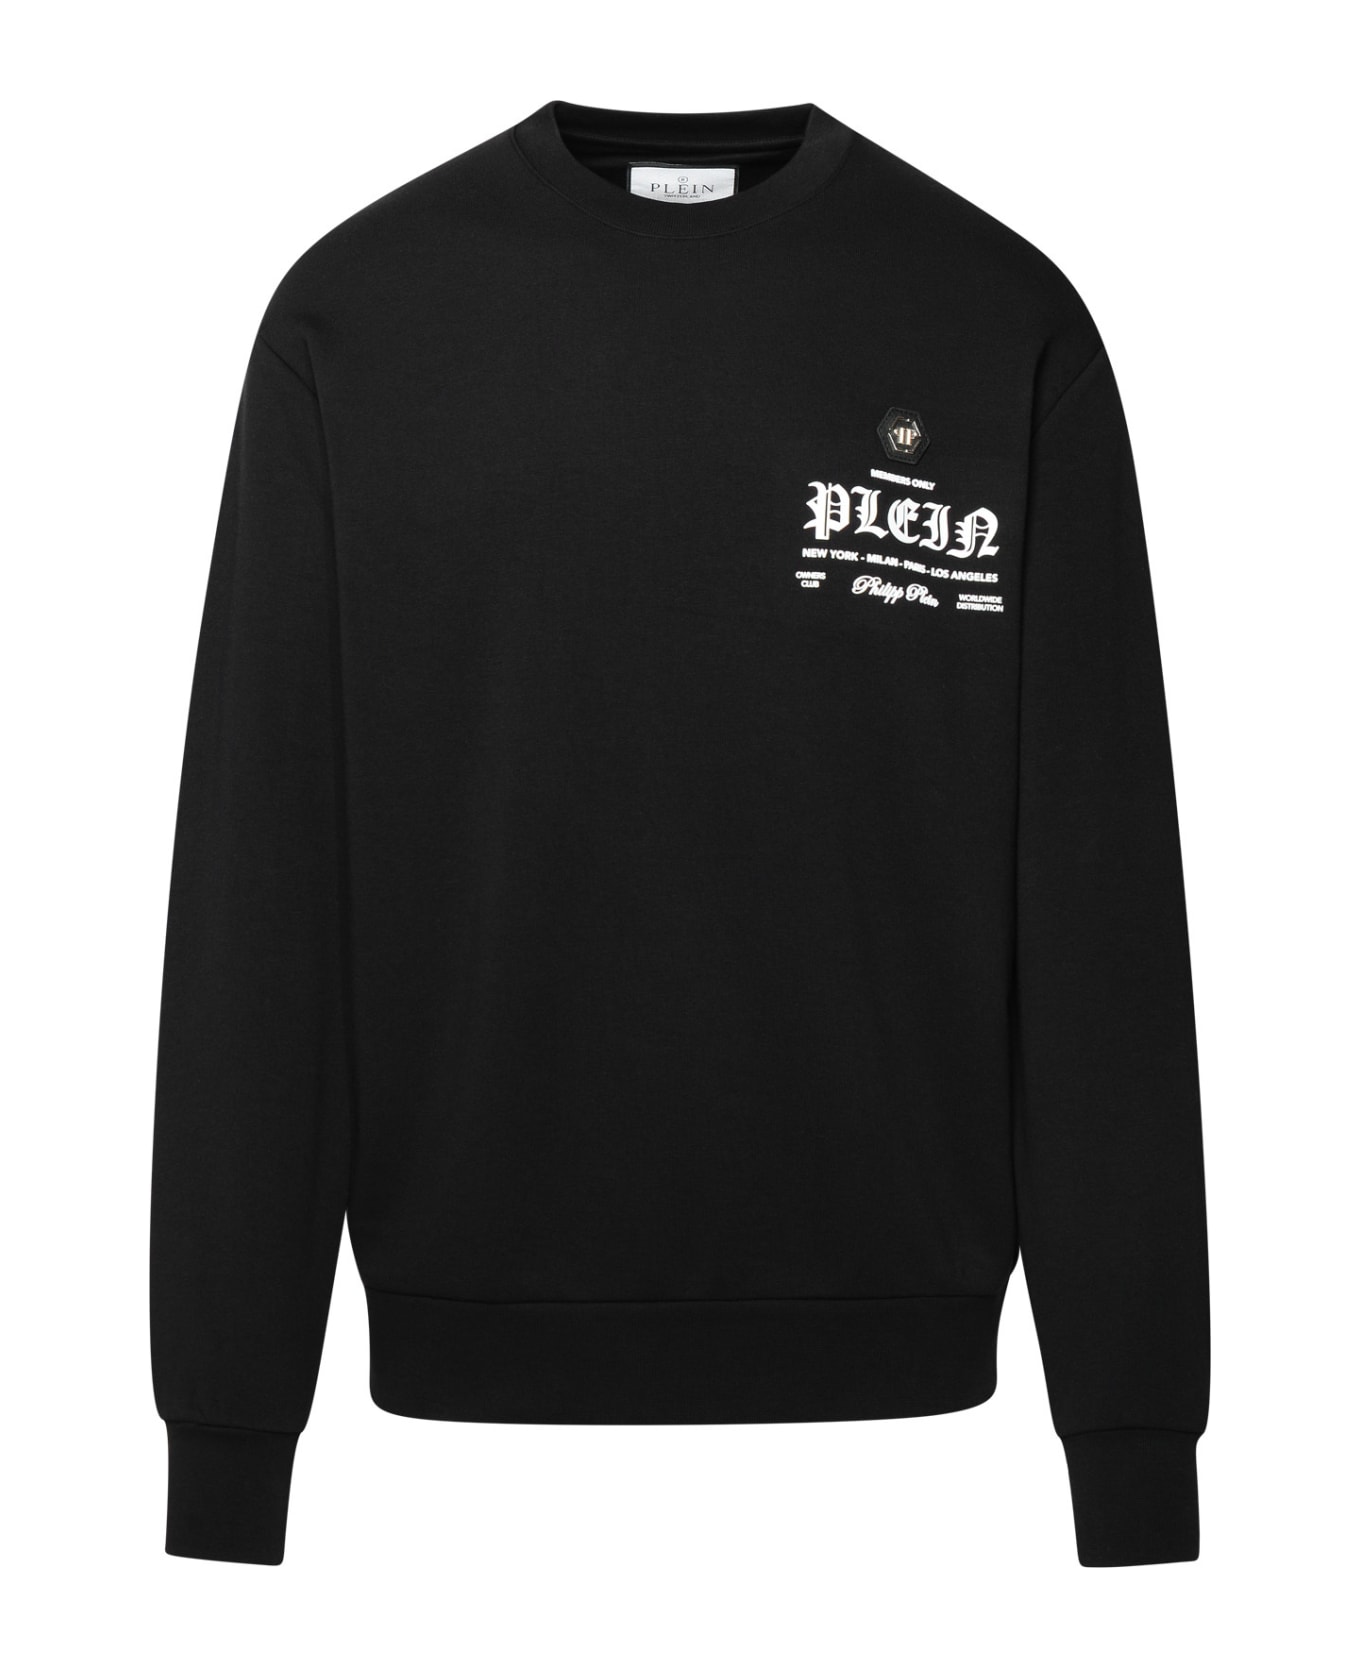 Philipp Plein Black Cotton Blend Sweatshirt - Black フリース